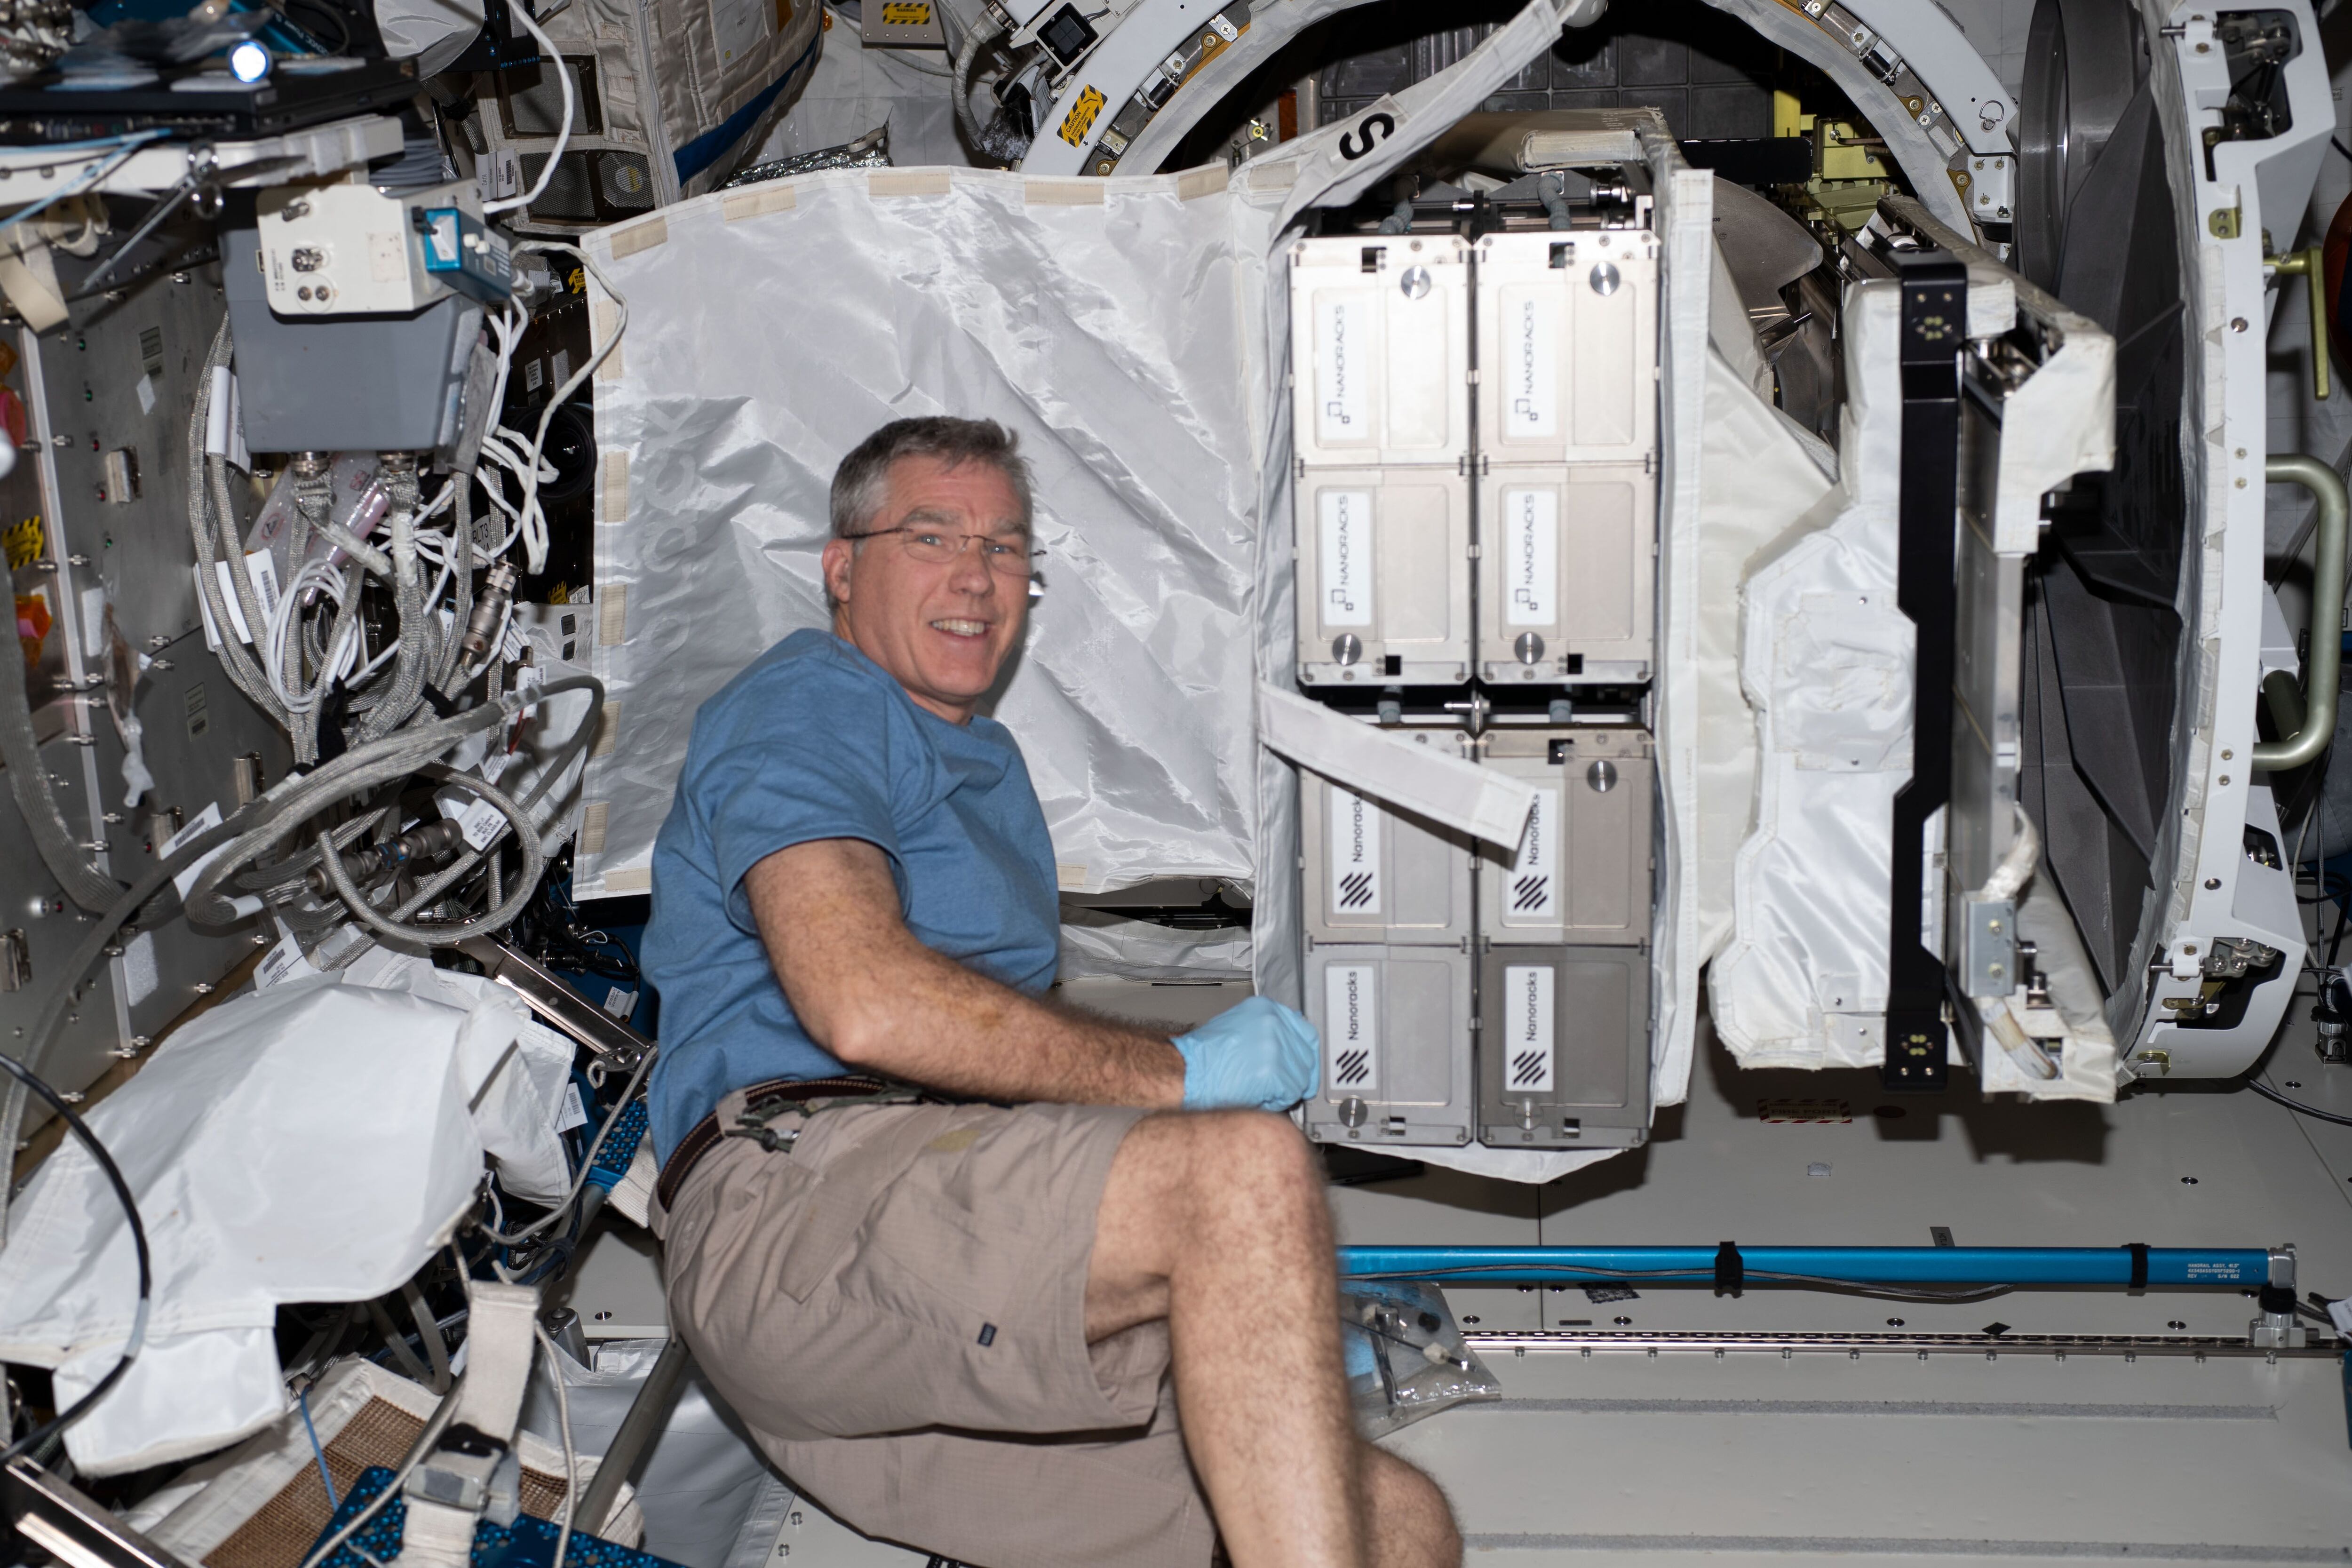 Uno de los astronautas trabajando en la Estación Espacial (NASA)